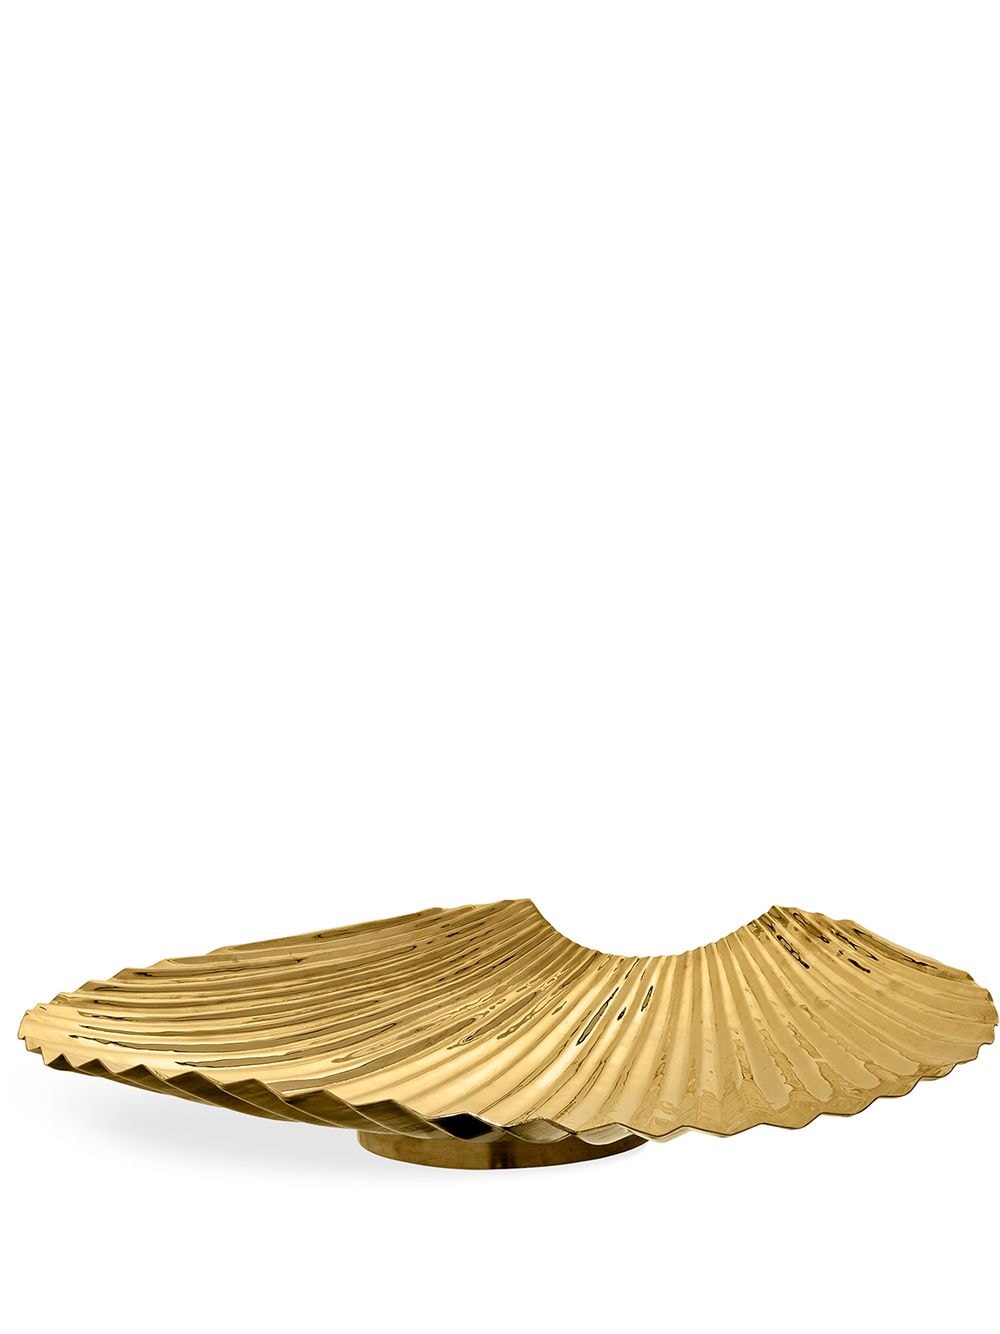 AYTM Concha valet tray (42cm) - Gold